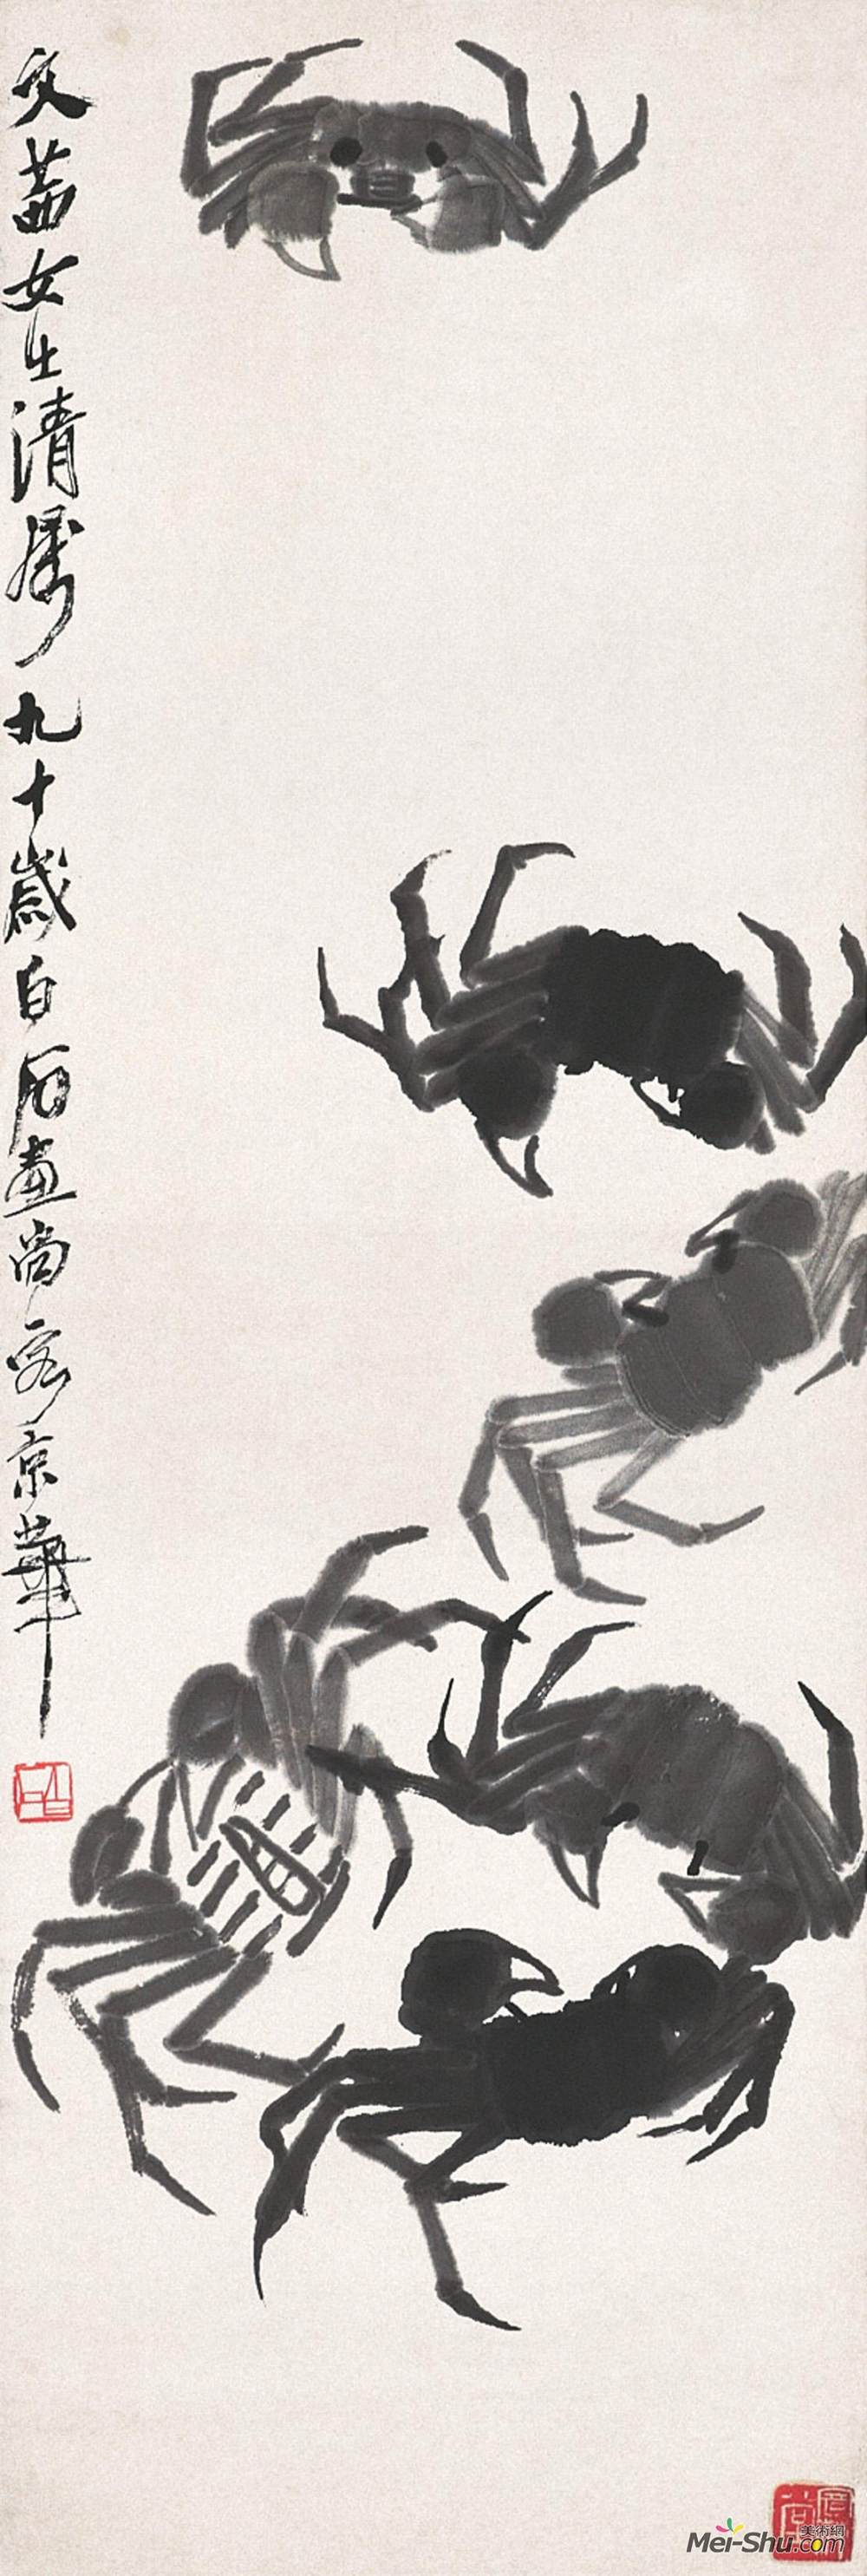 《水墨螃蟹》齐白石中国画艺术作品